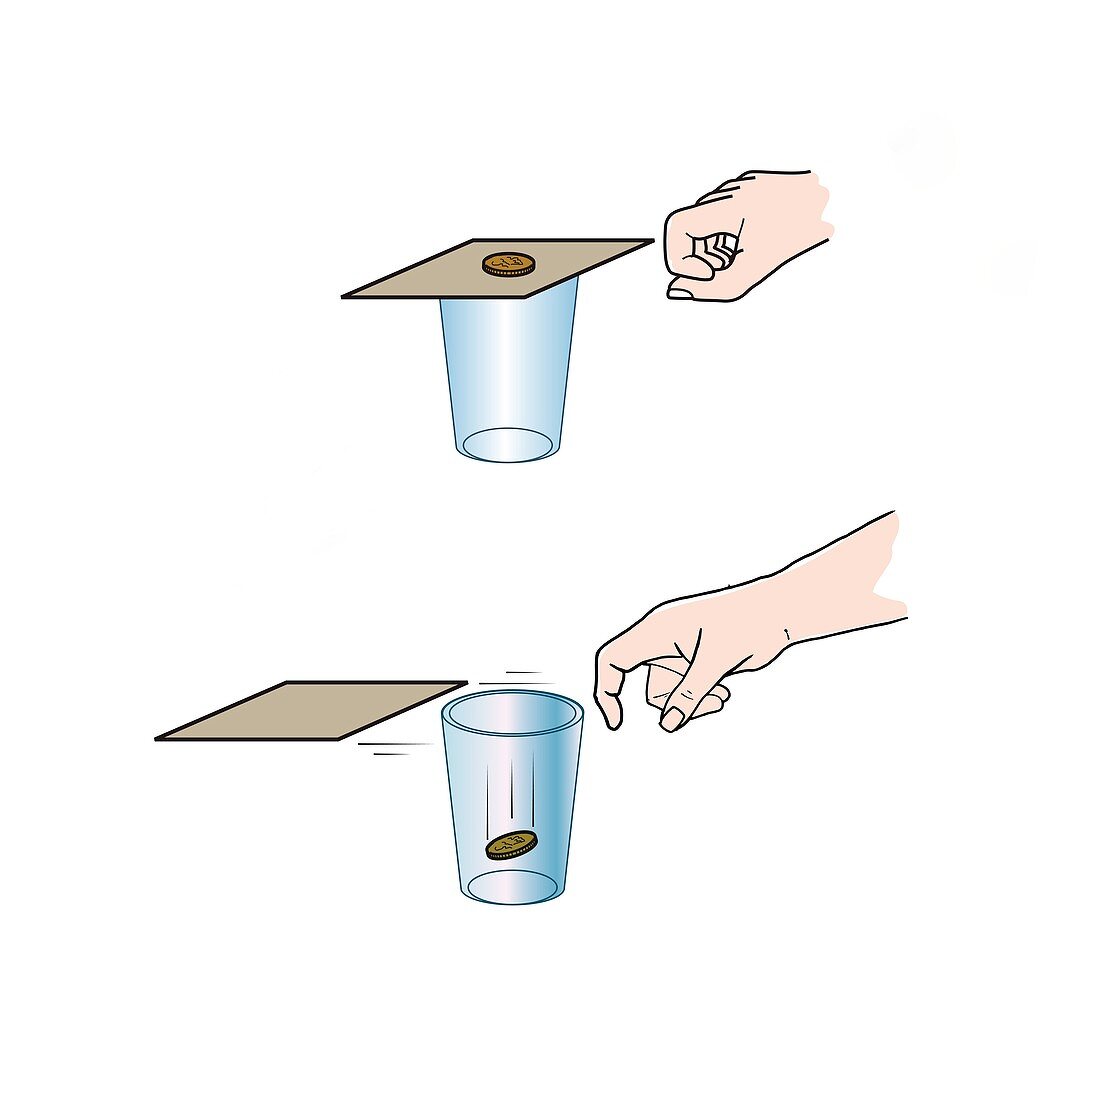 Inertia magic trick, illustration